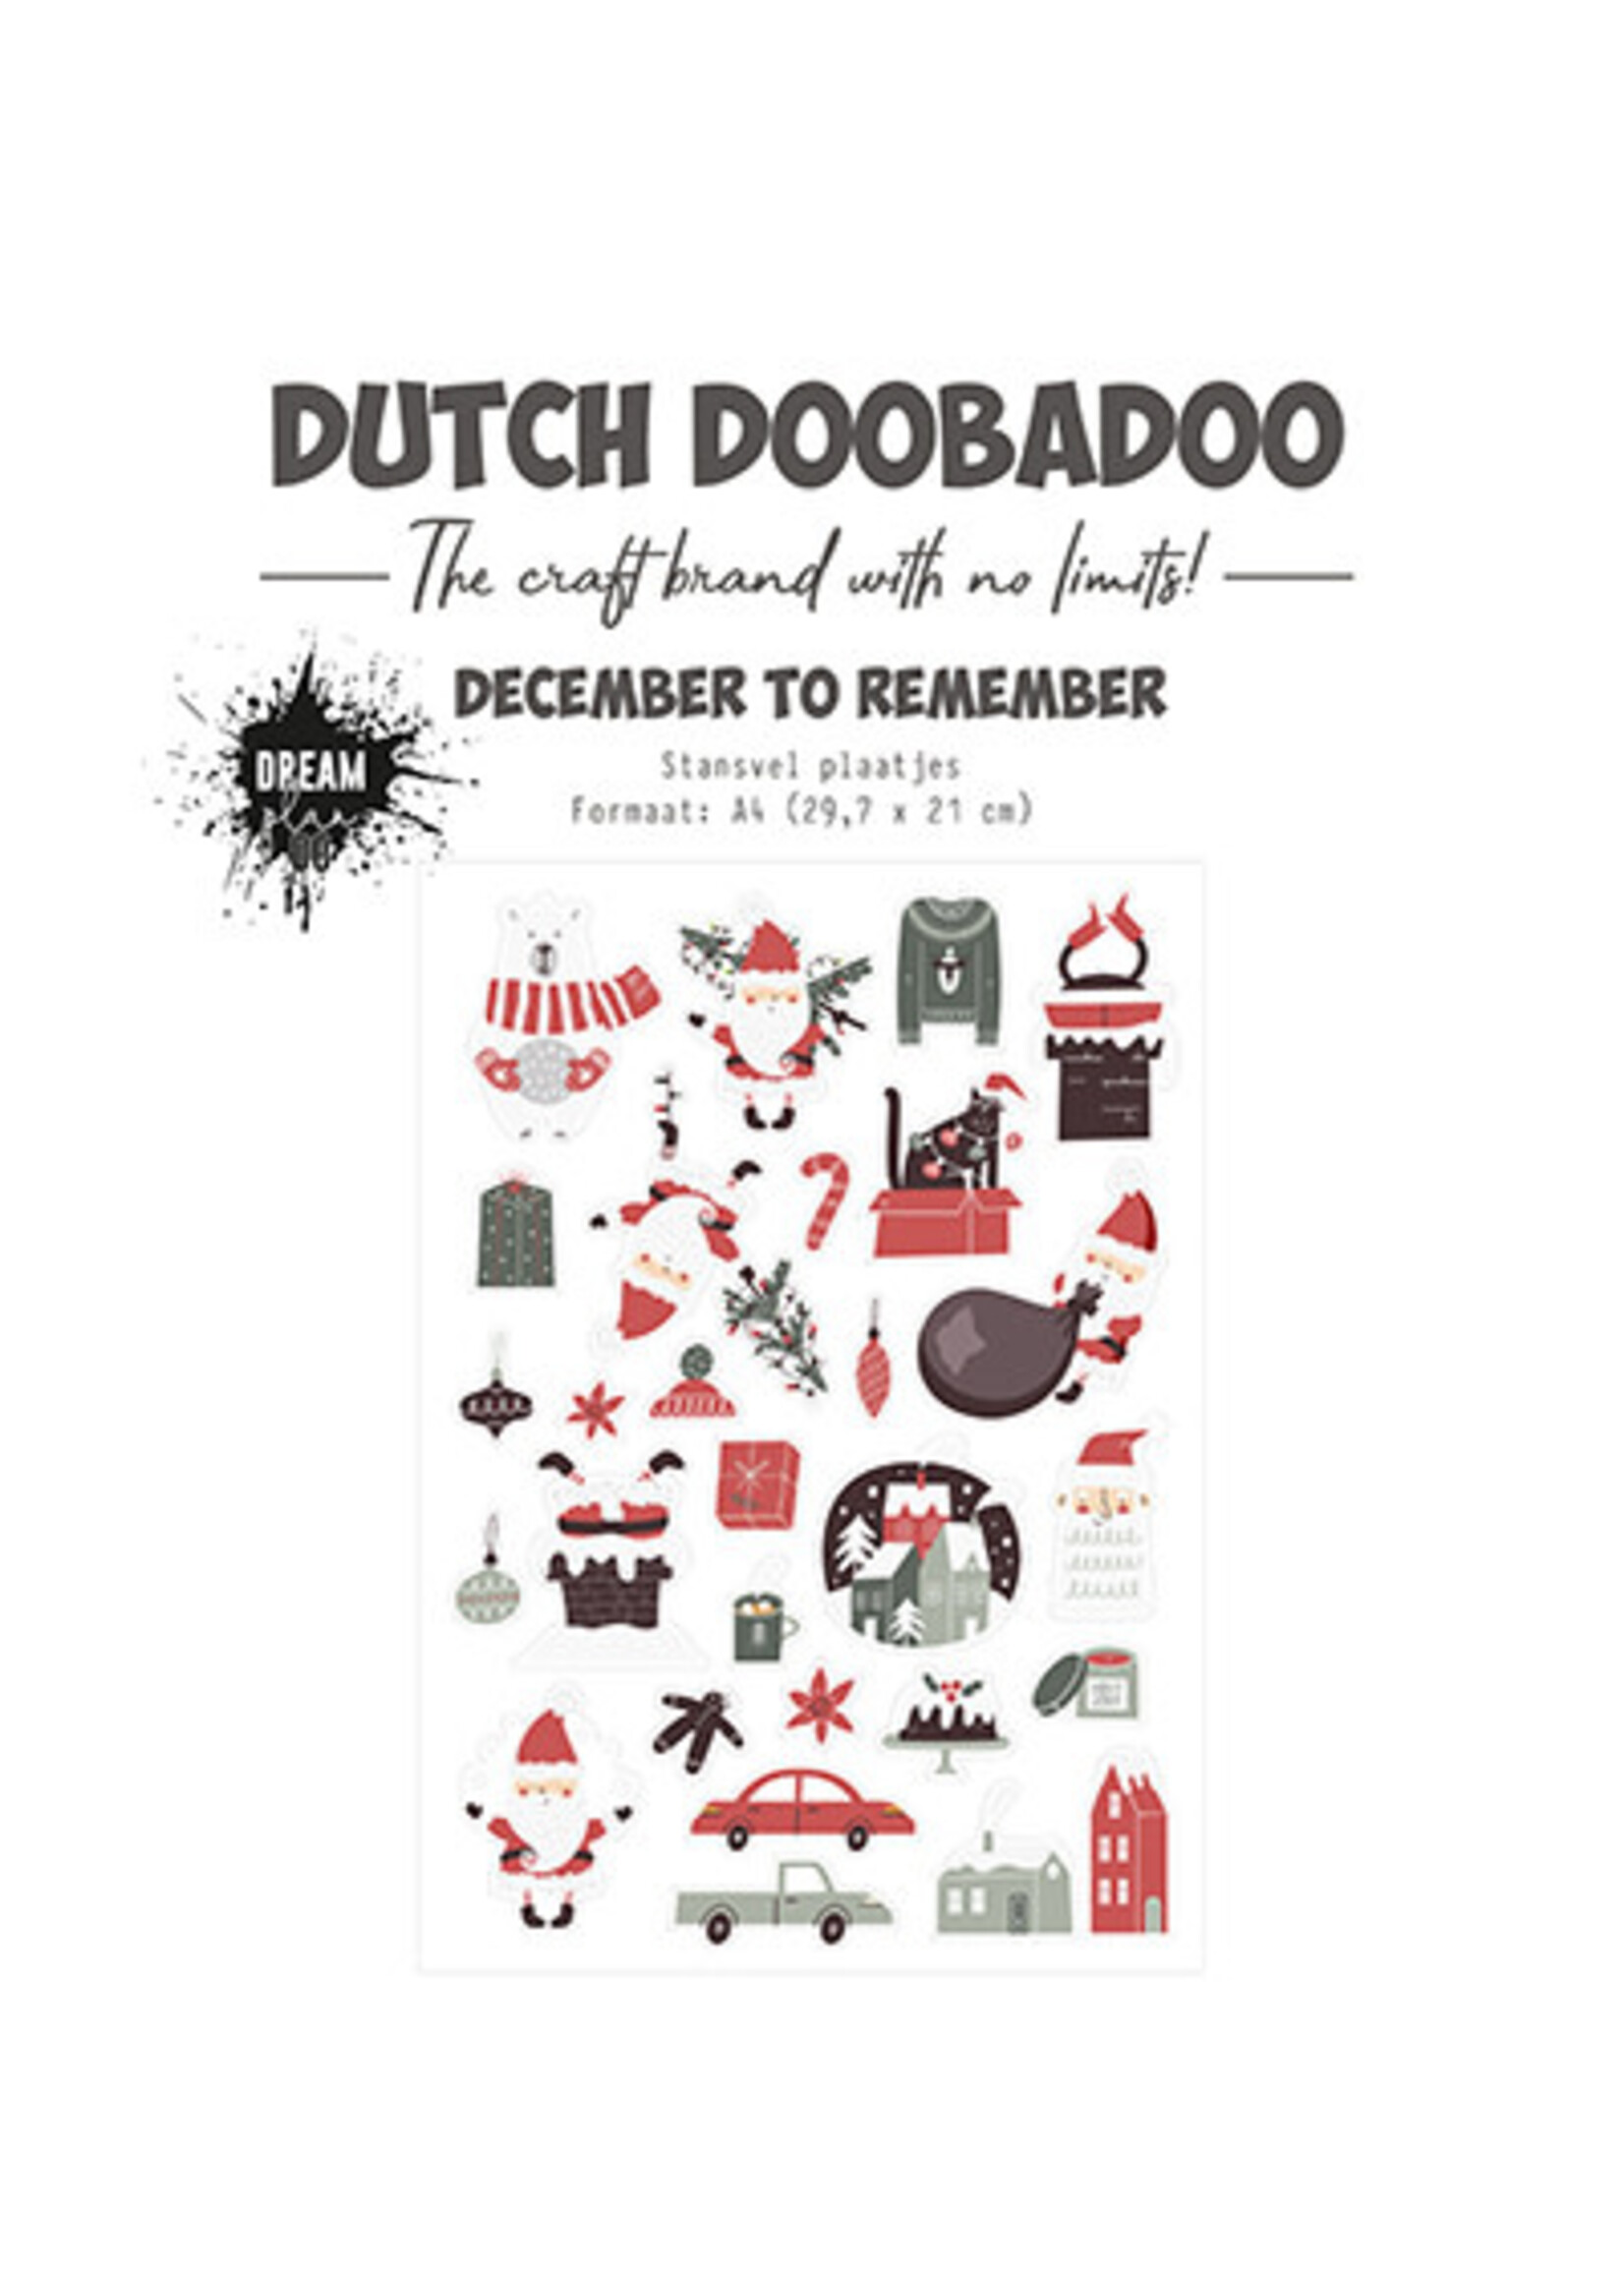 Dutch Doobadoo 474.007.019 - Stansvel Plaatjes to Remember